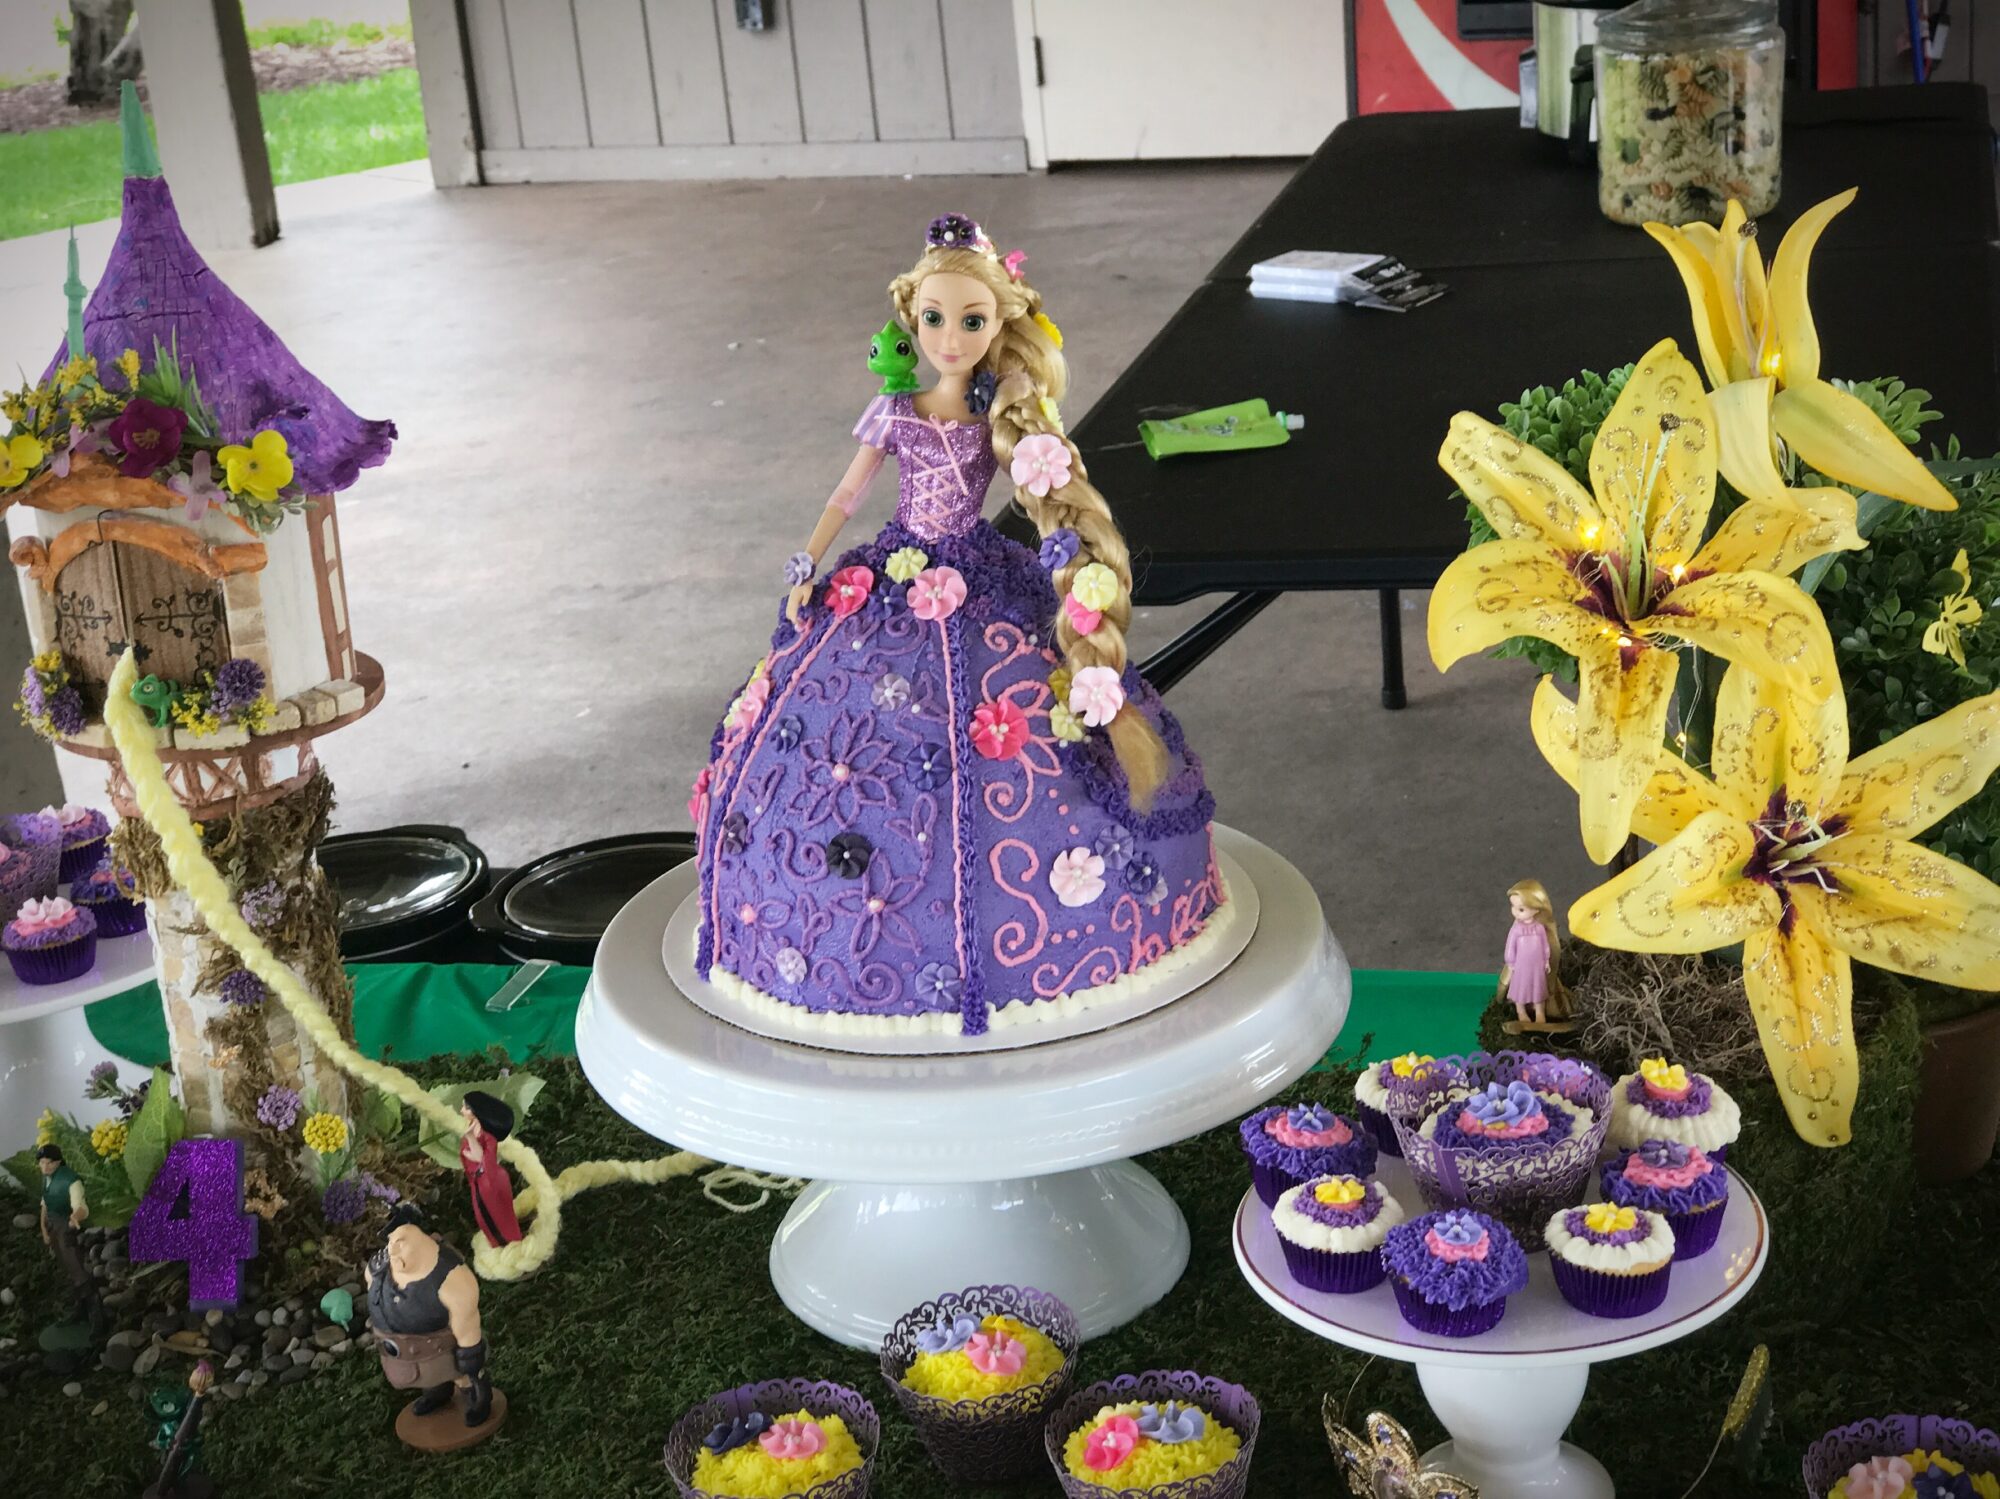 Rapunzel birthday cake by Pridipdiyoren on DeviantArt